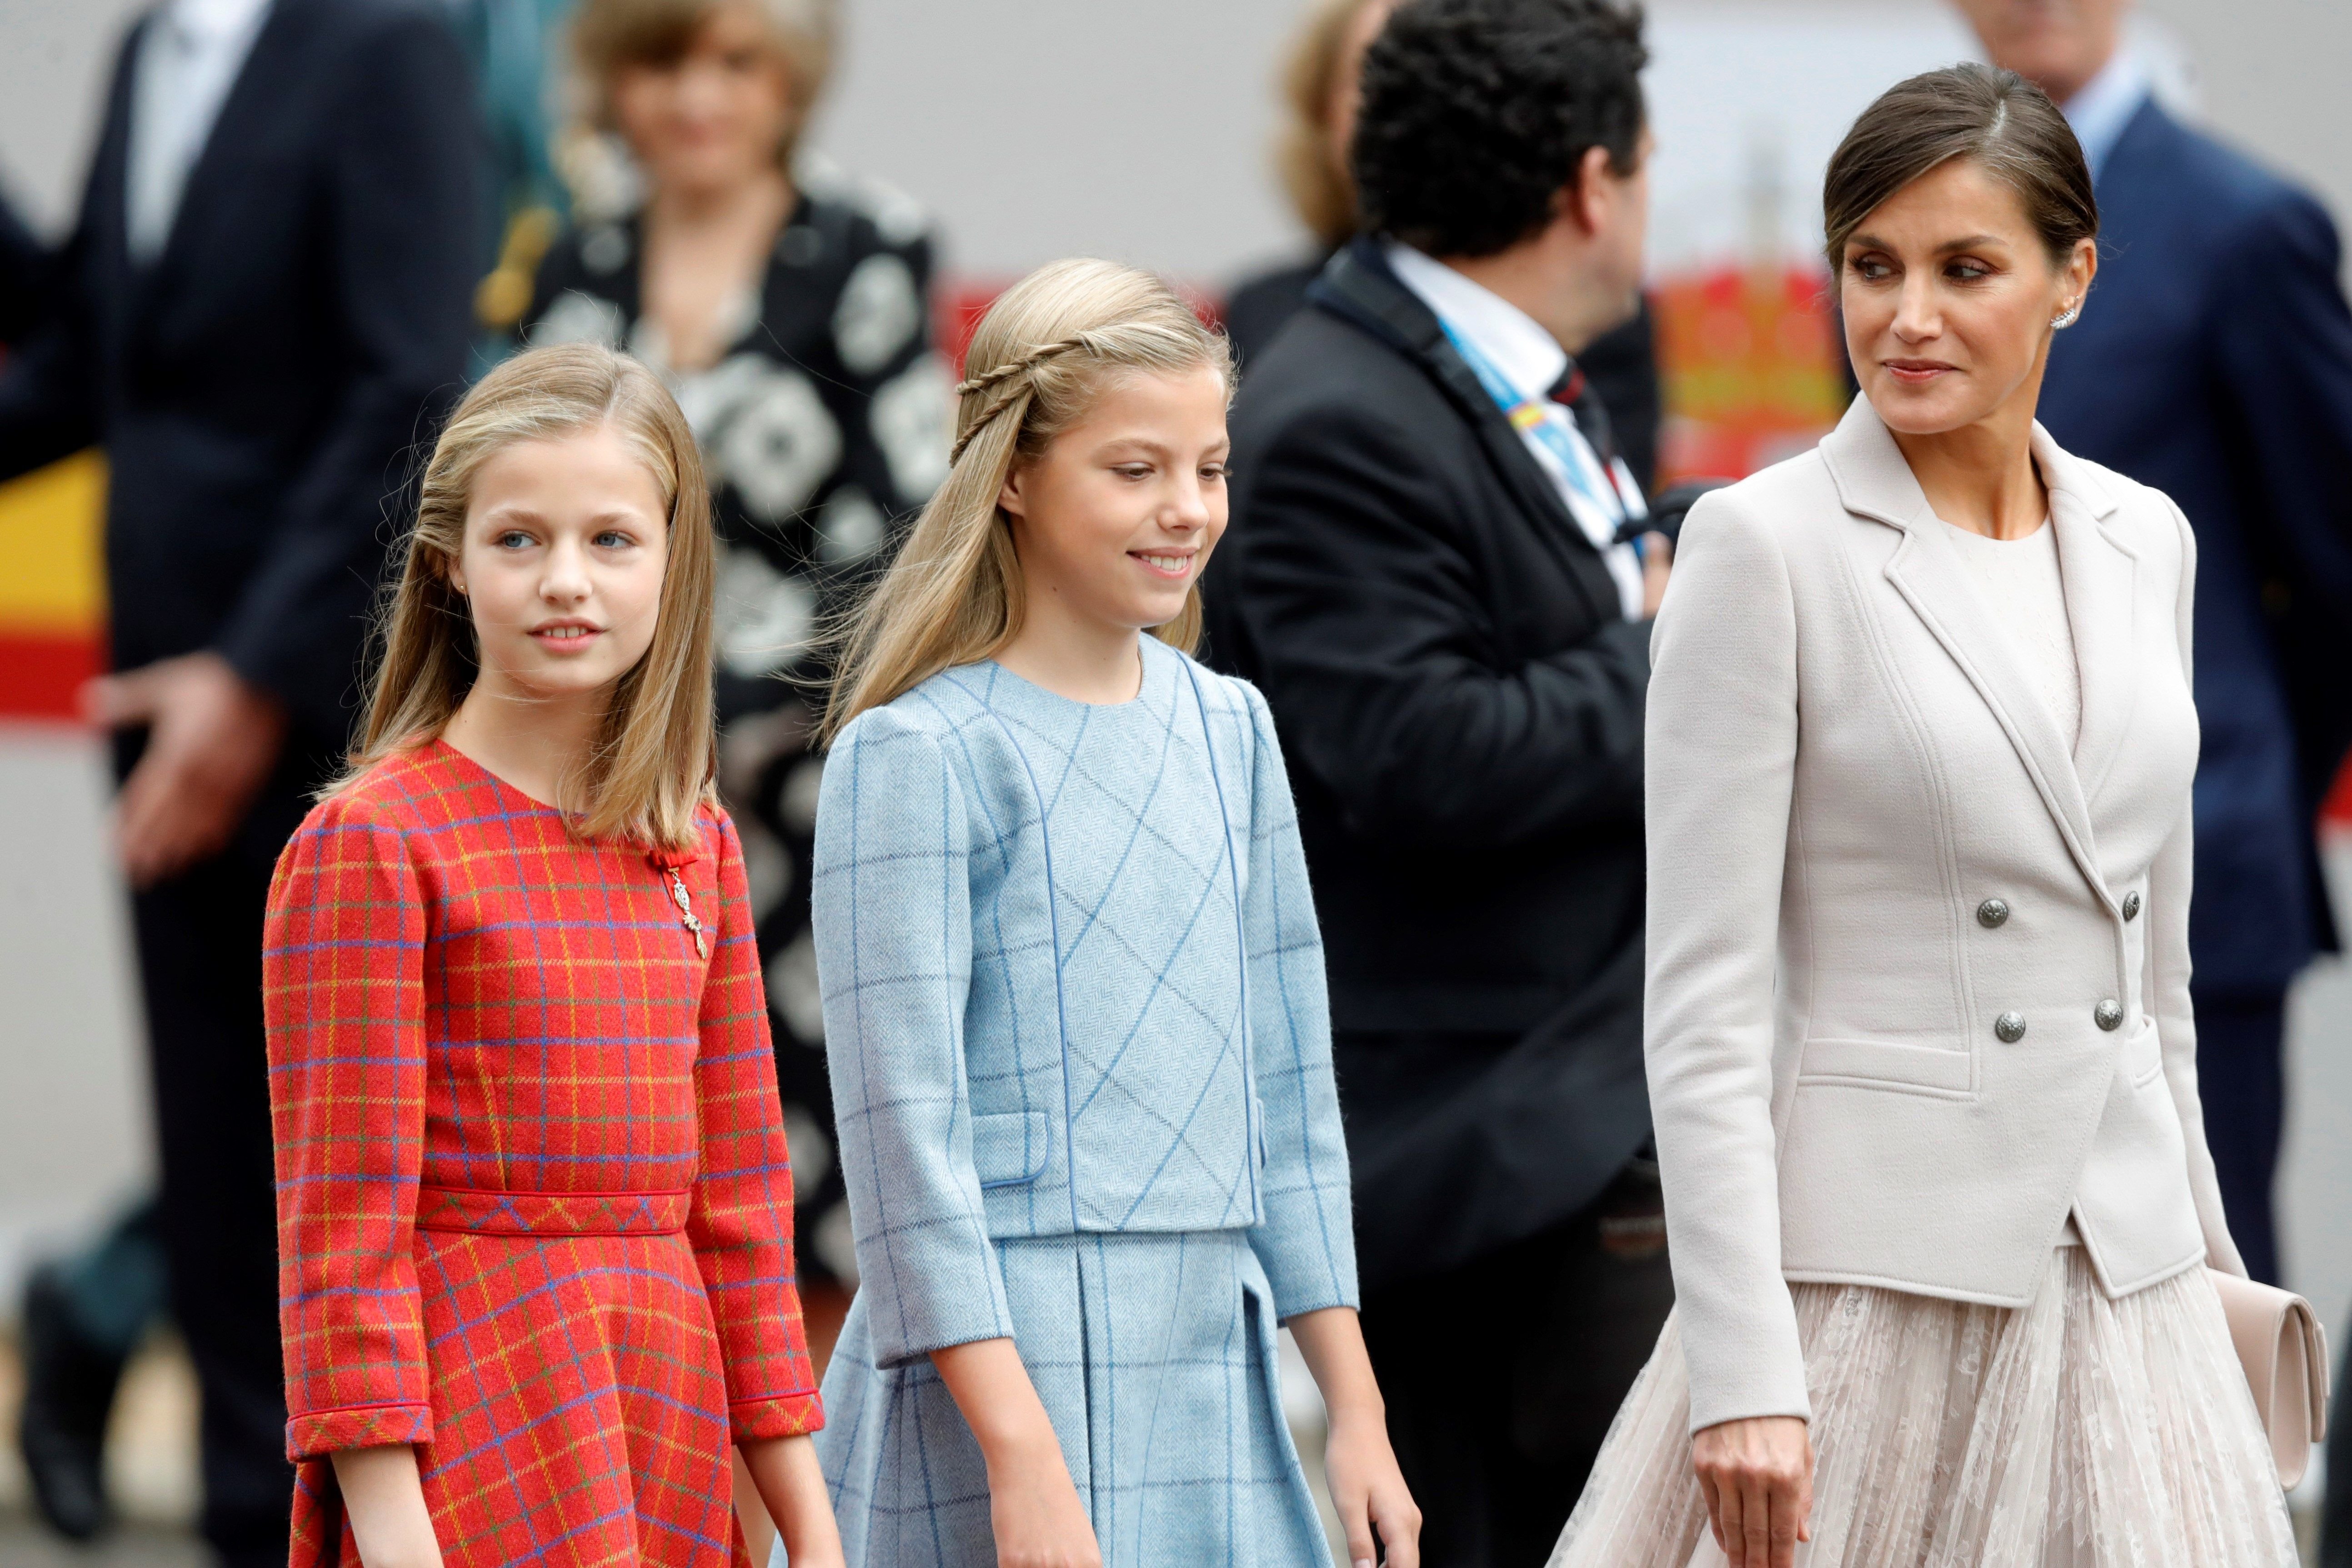 Letícia i les nenes passen de la reina Sofia i van al ballet amb l’àvia materna